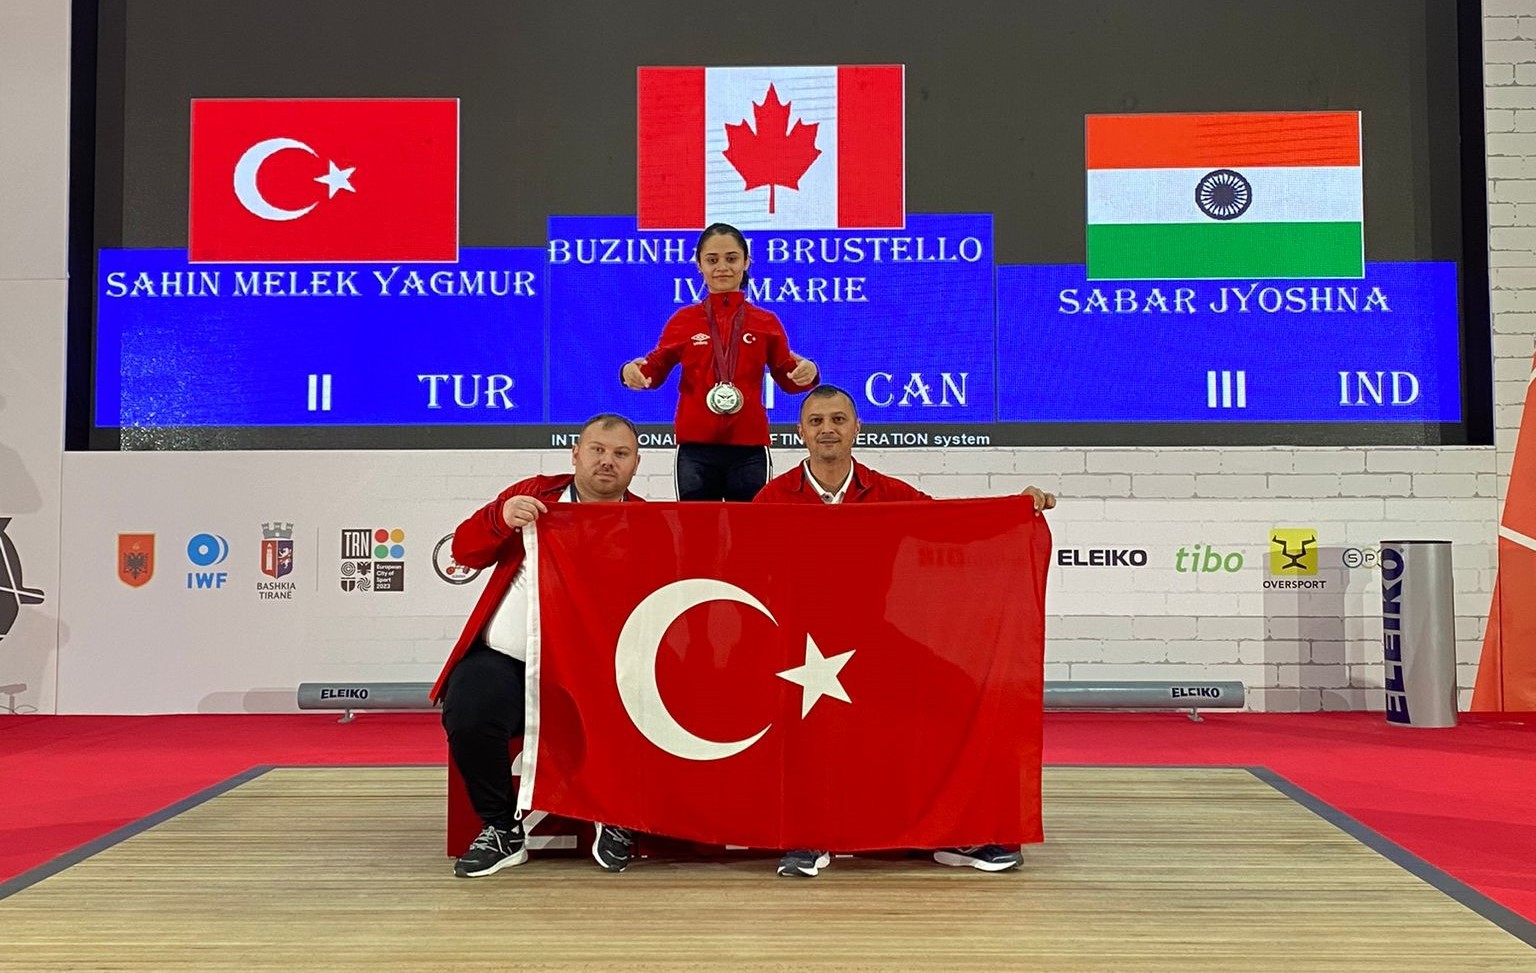 Yağmur Melek Şahin'den Dünya Şampiyonası'nda 3 madalya